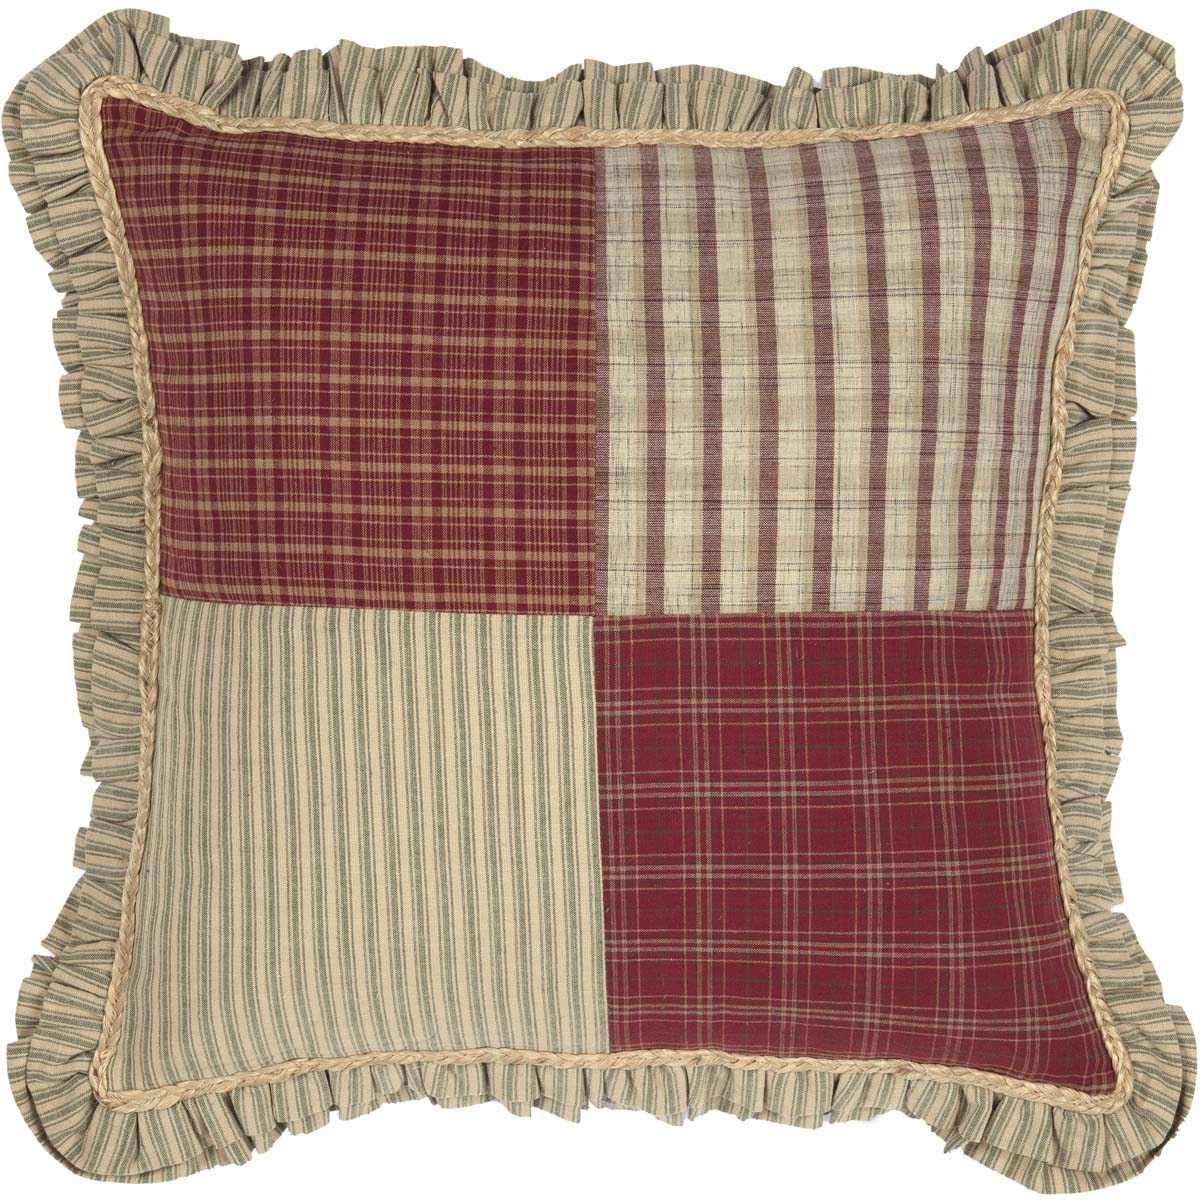 Prairie Winds Patchwork Pillow 18x18 - The Fox Decor